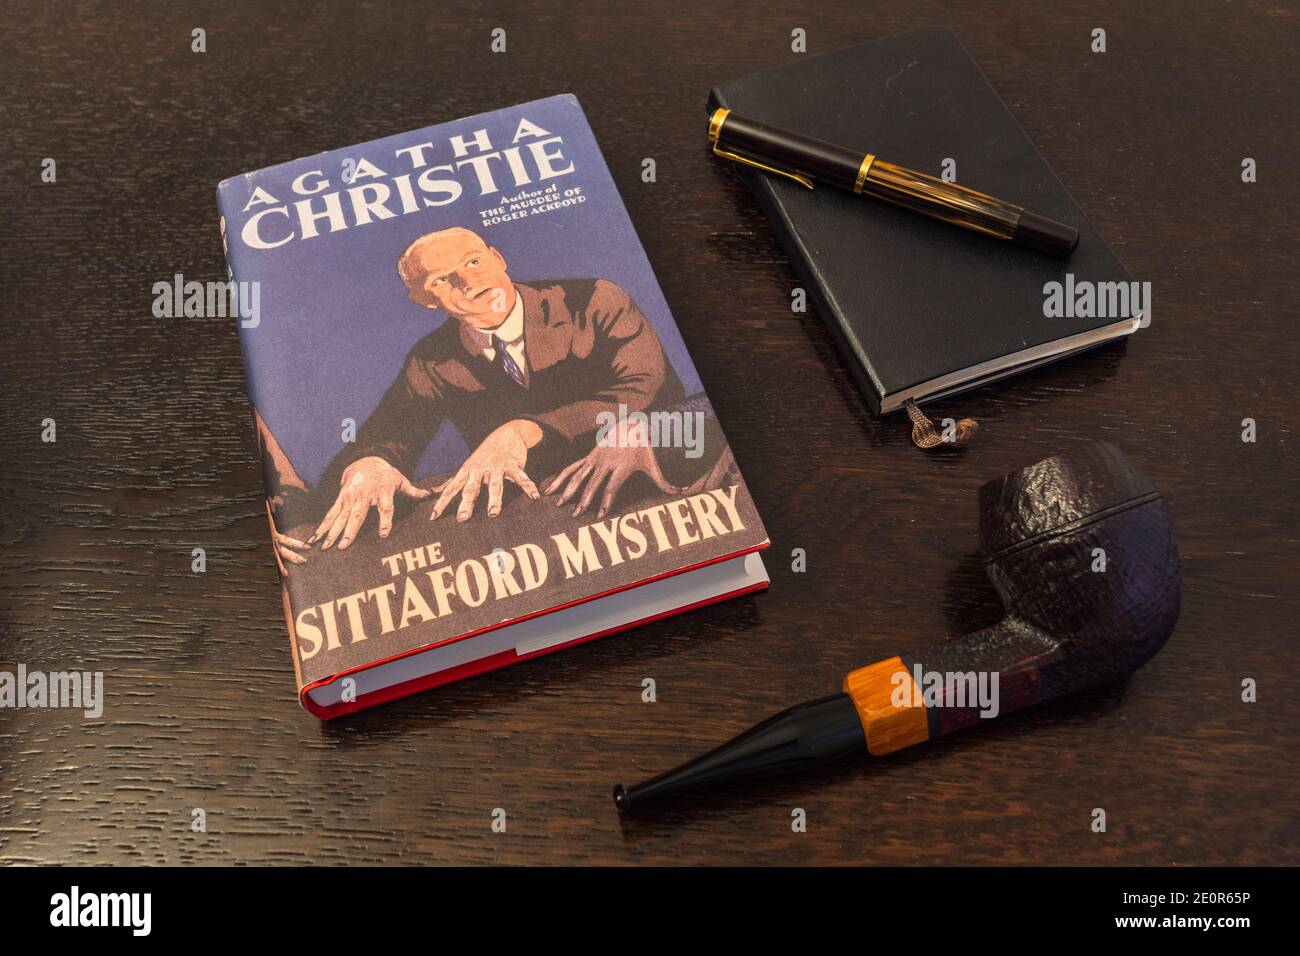 Londra, Inghilterra, Regno Unito - 2 gennaio 2021:The Sittaford Mystery Book di Agatha Christie in a Facsimile First Edition with Tobacco Pipe, Fountian Pen and No Foto Stock